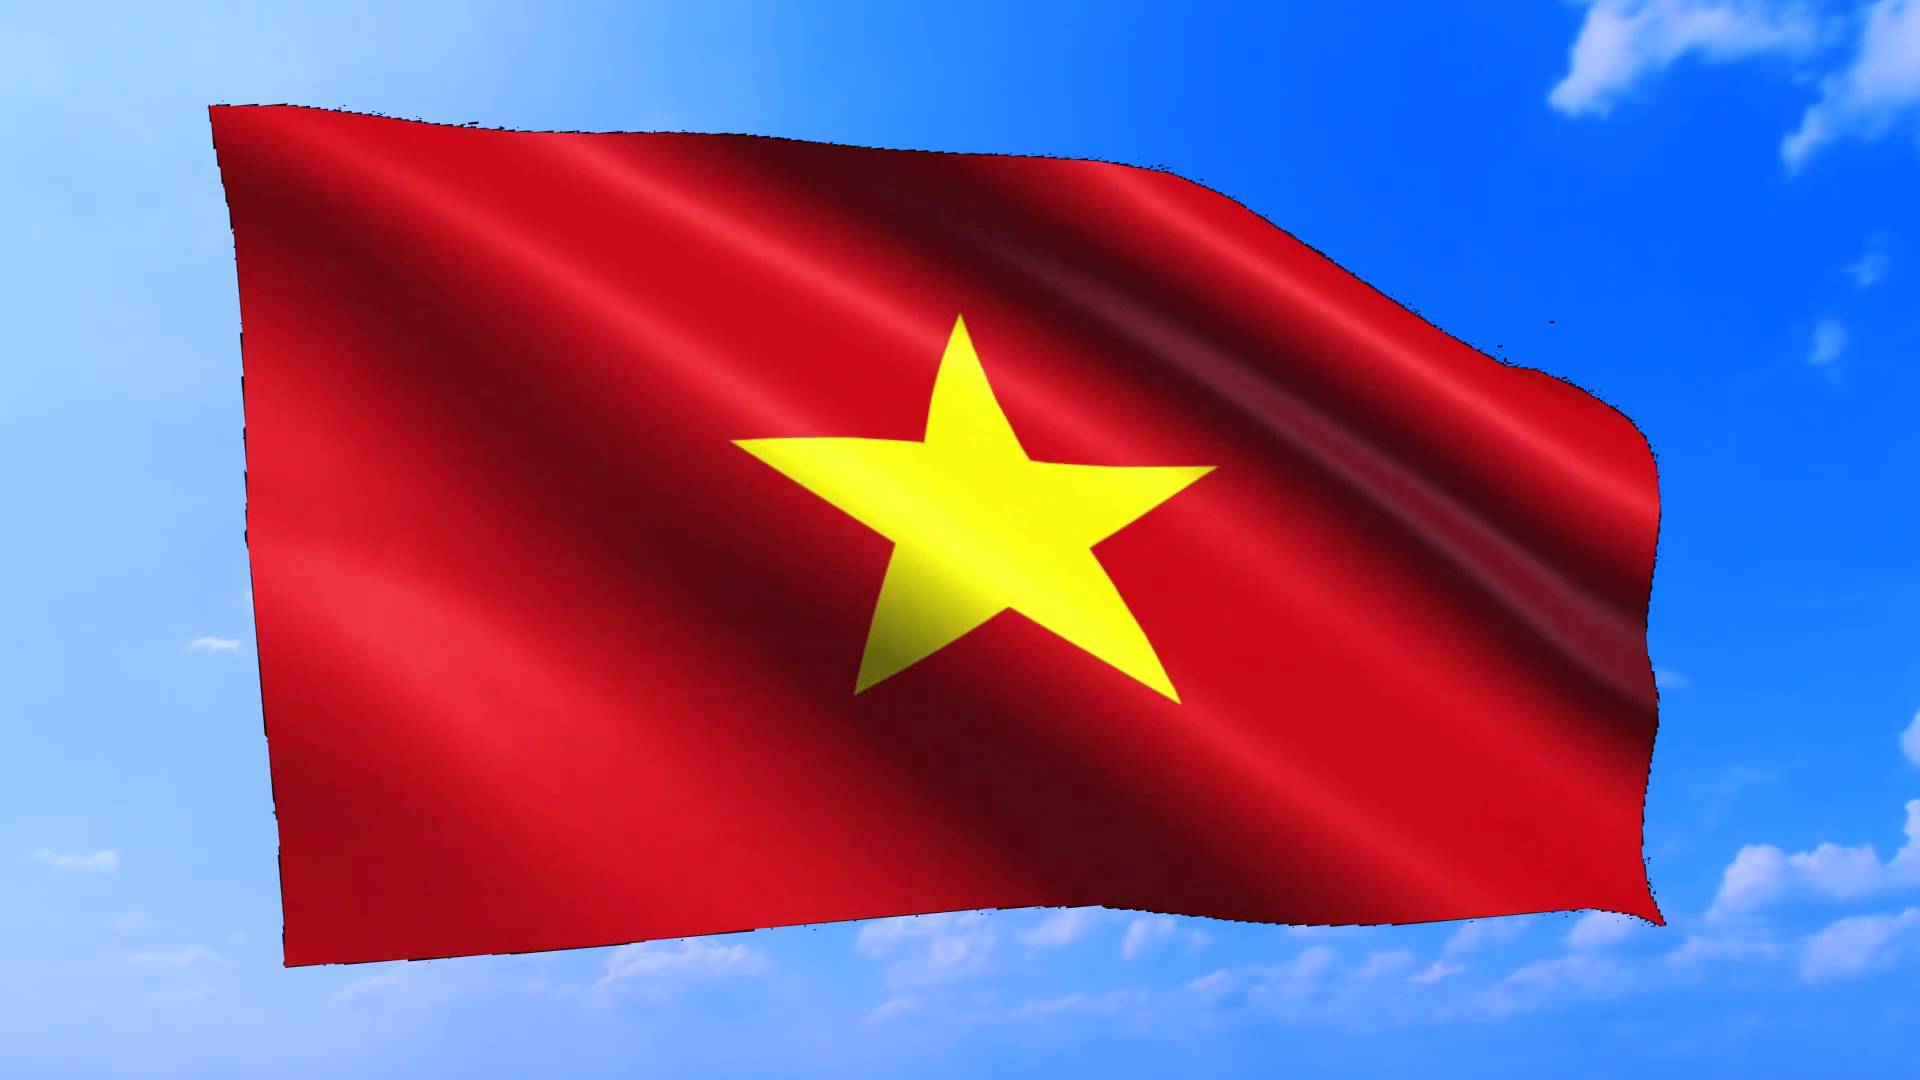 Niềm tự hào dân tộc với cờ đỏ sao vàng đã được truyền tải qua nhiều thế hệ. Hãy xem hình ảnh này để cảm nhận sức mạnh và uy lực của quốc kỳ Việt Nam. Hãy trân trọng và tự hào vì cờ đỏ sao vàng là biểu tượng văn hóa và truyền thống của dân tộc Việt Nam.